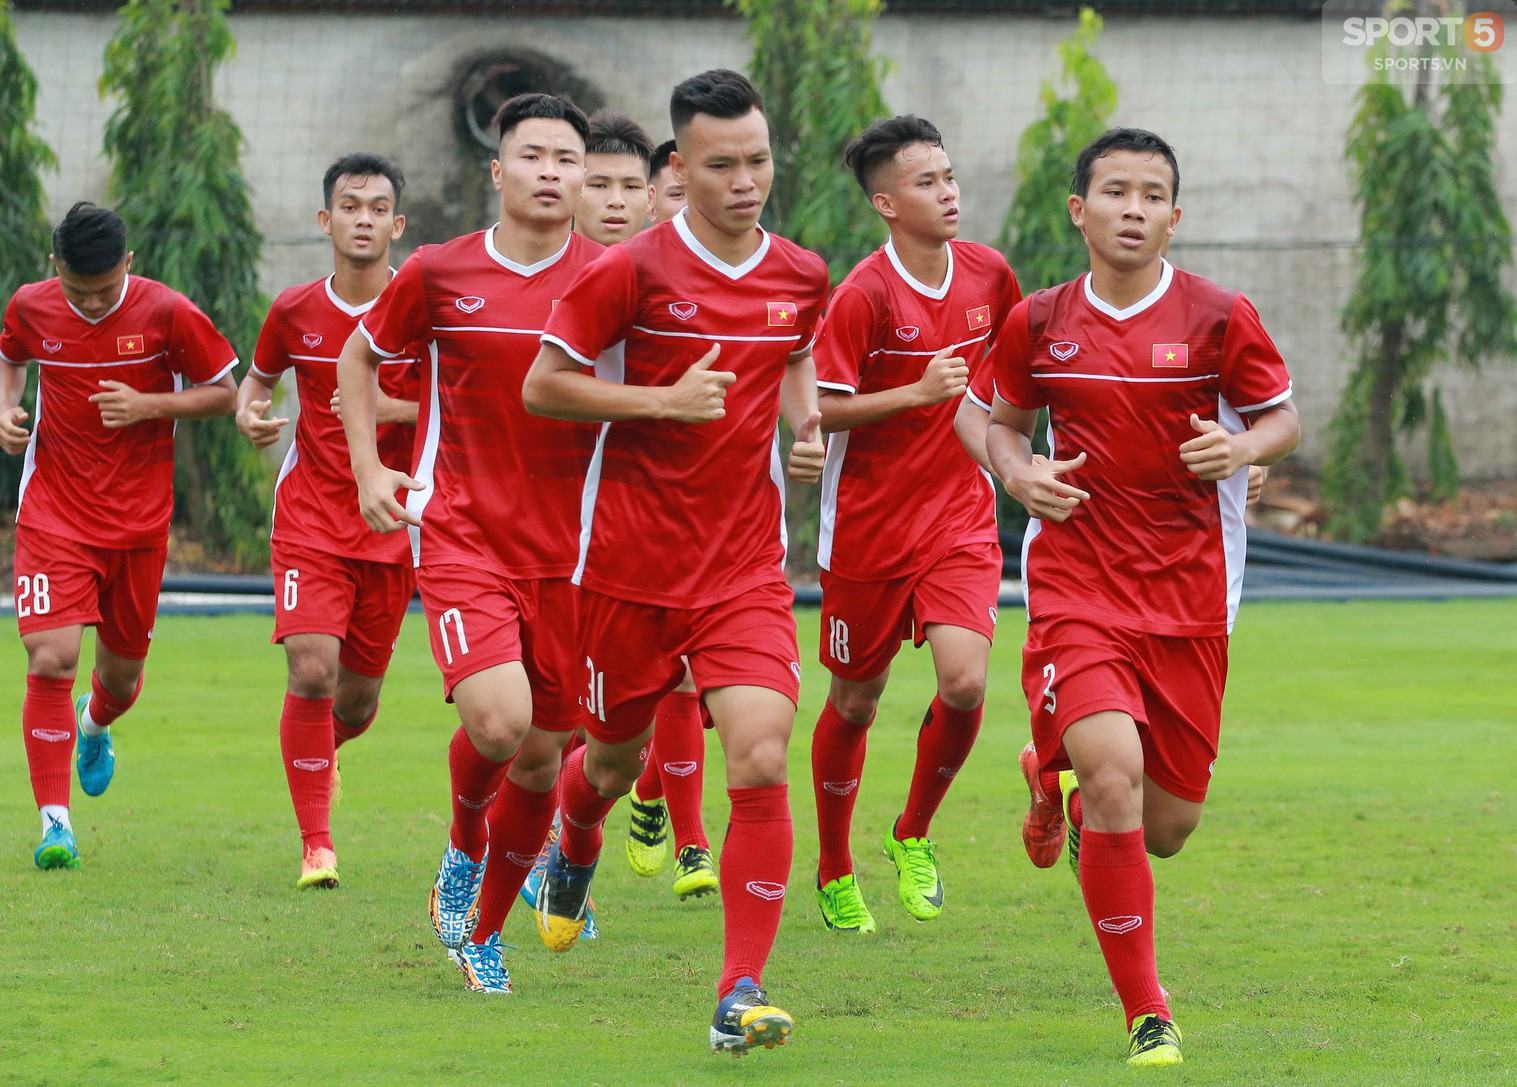 HLV Park Hang-seo “xem giò” U19 Việt Nam trước khi lên đường chám trán U19 Thái Lan ở AFF - Ảnh 4.